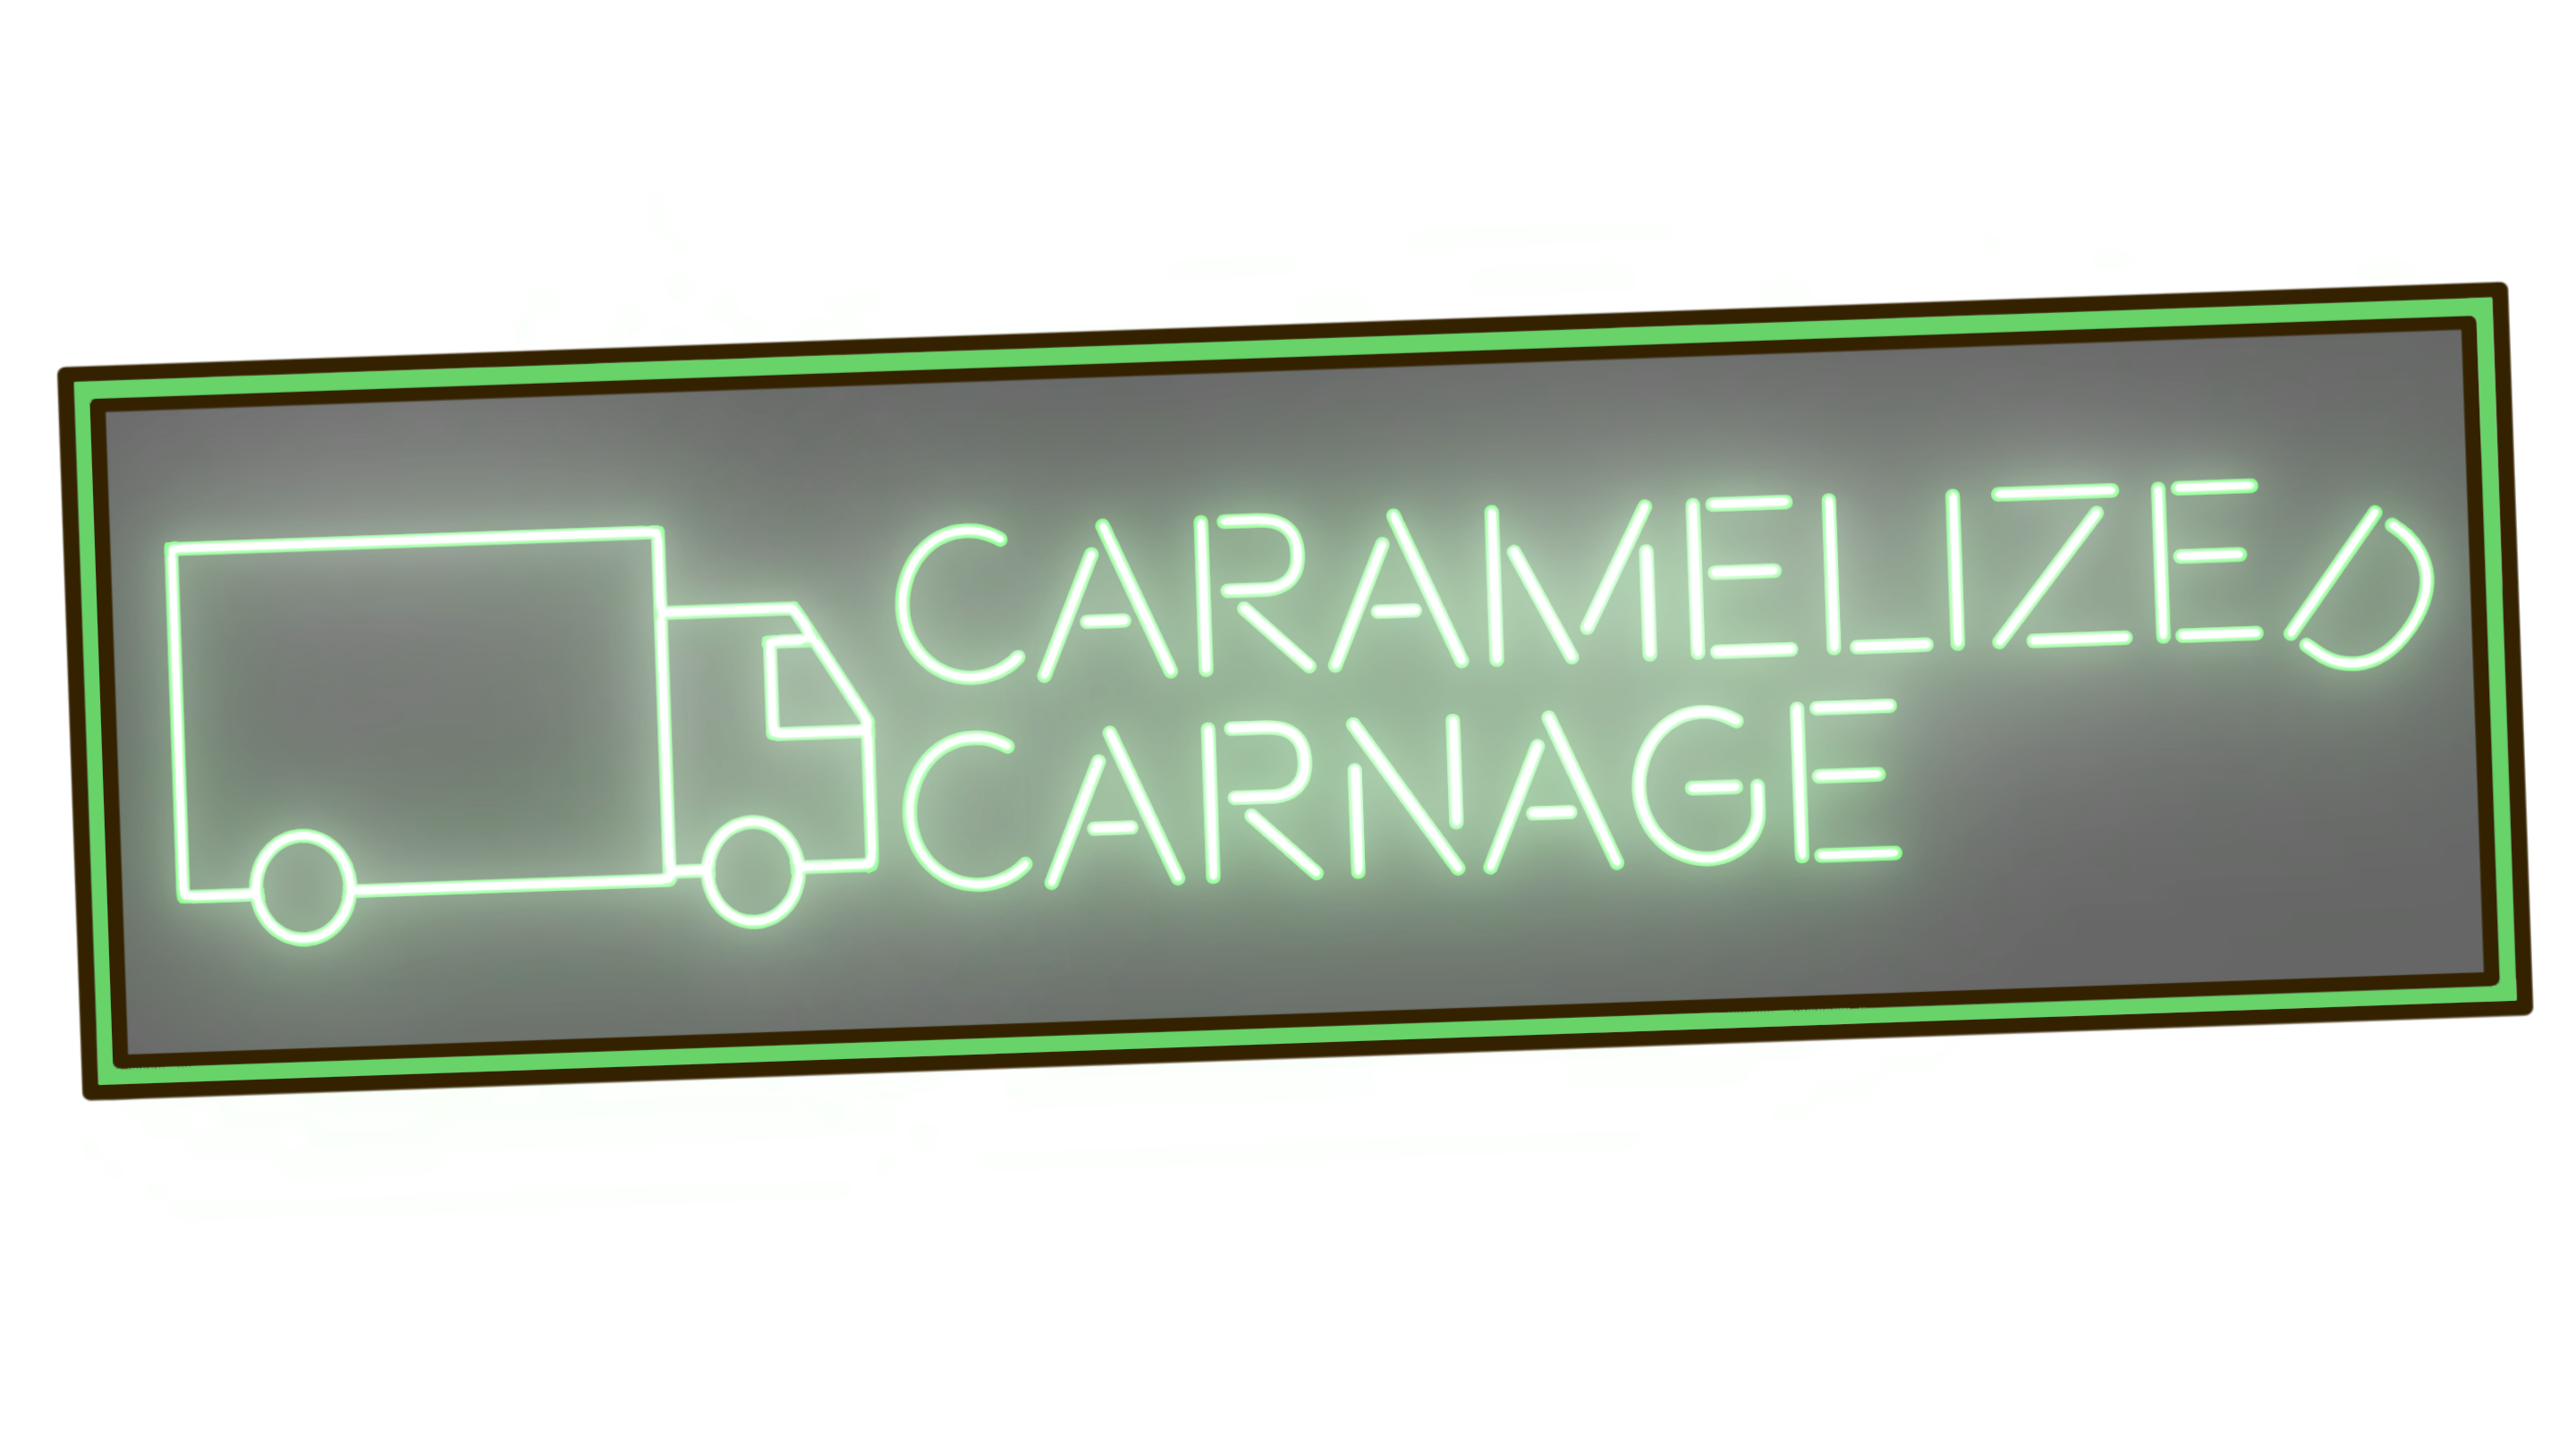 Caramelized Carnage